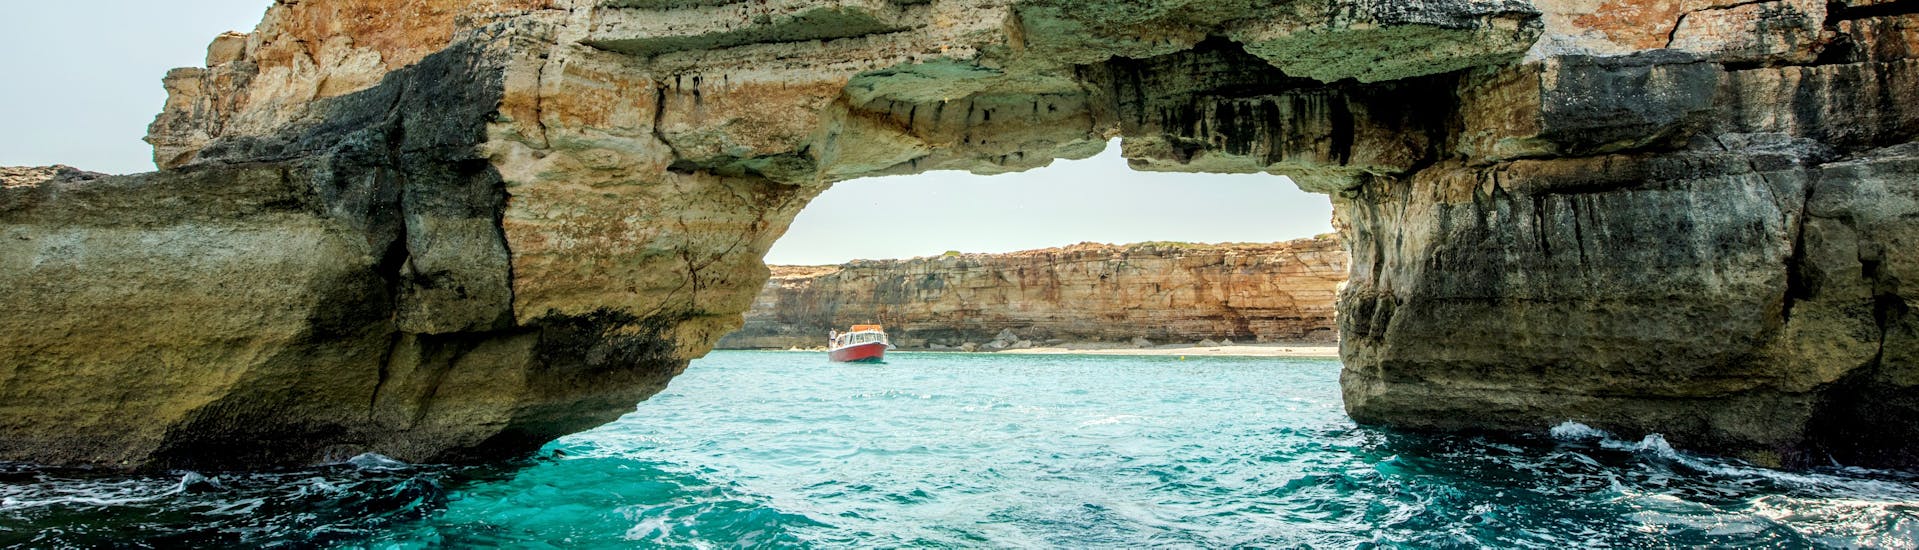 Vista que verá durante el paseo en Barco desde Rethymno a las Cuevas de los Piratas en Creta con Dolphin Cruises.